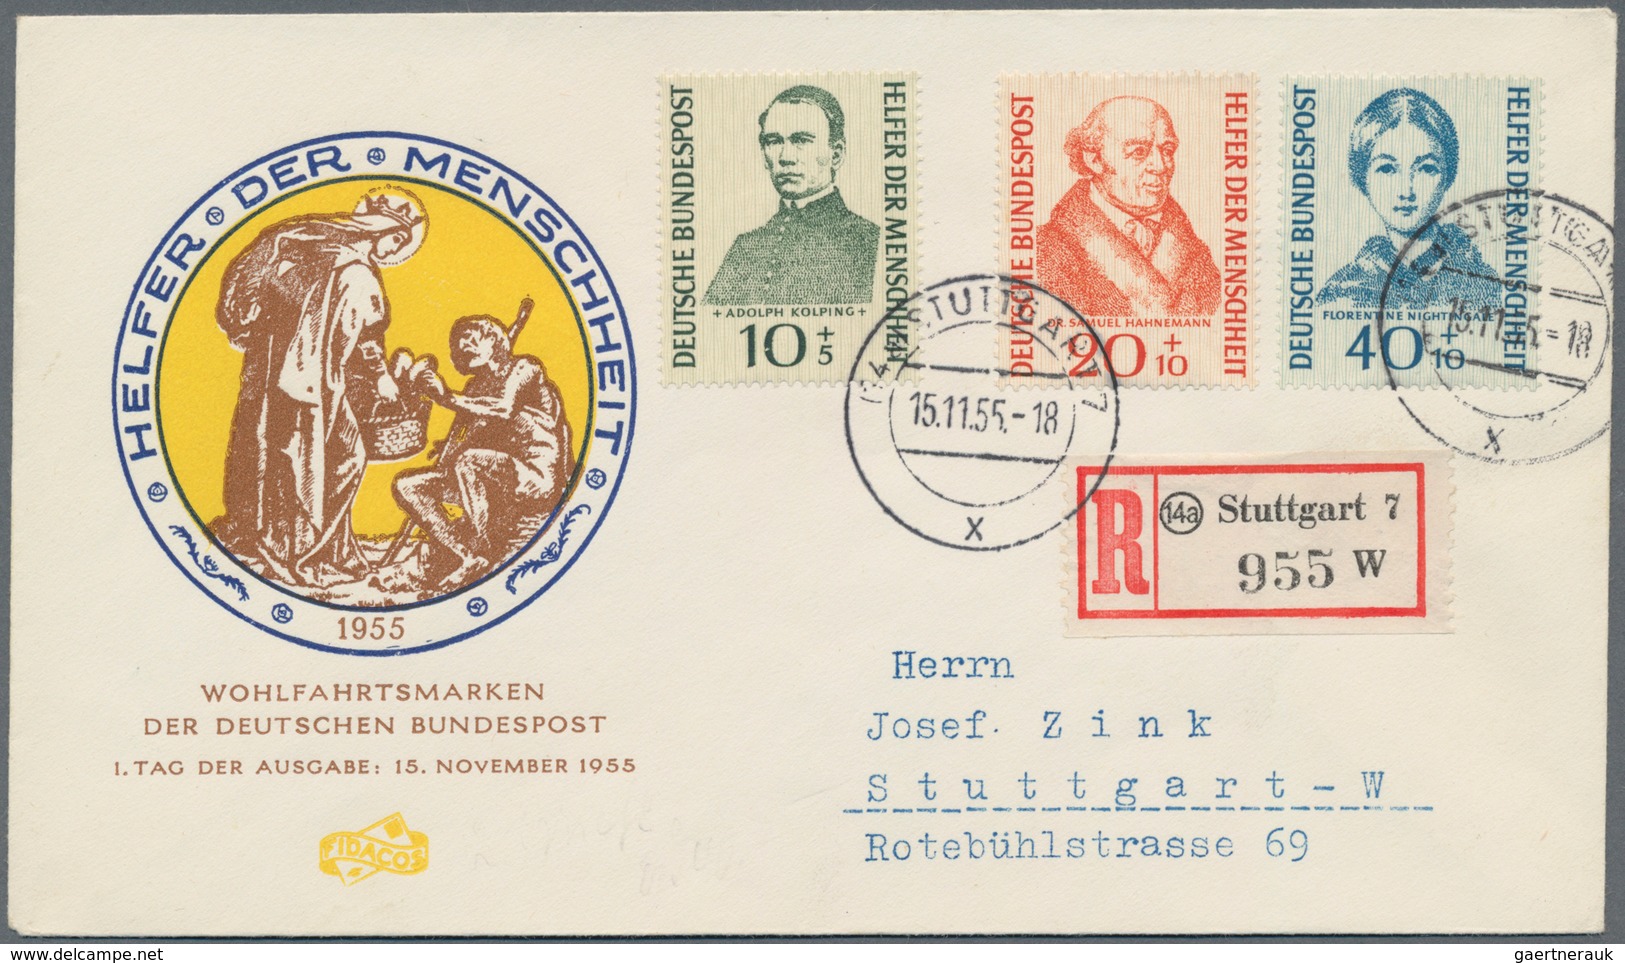 Bundesrepublik Deutschland: 1950/1990 (ca.), meist späte 50er und frühe 60er Jahre, vielseitiger Pos